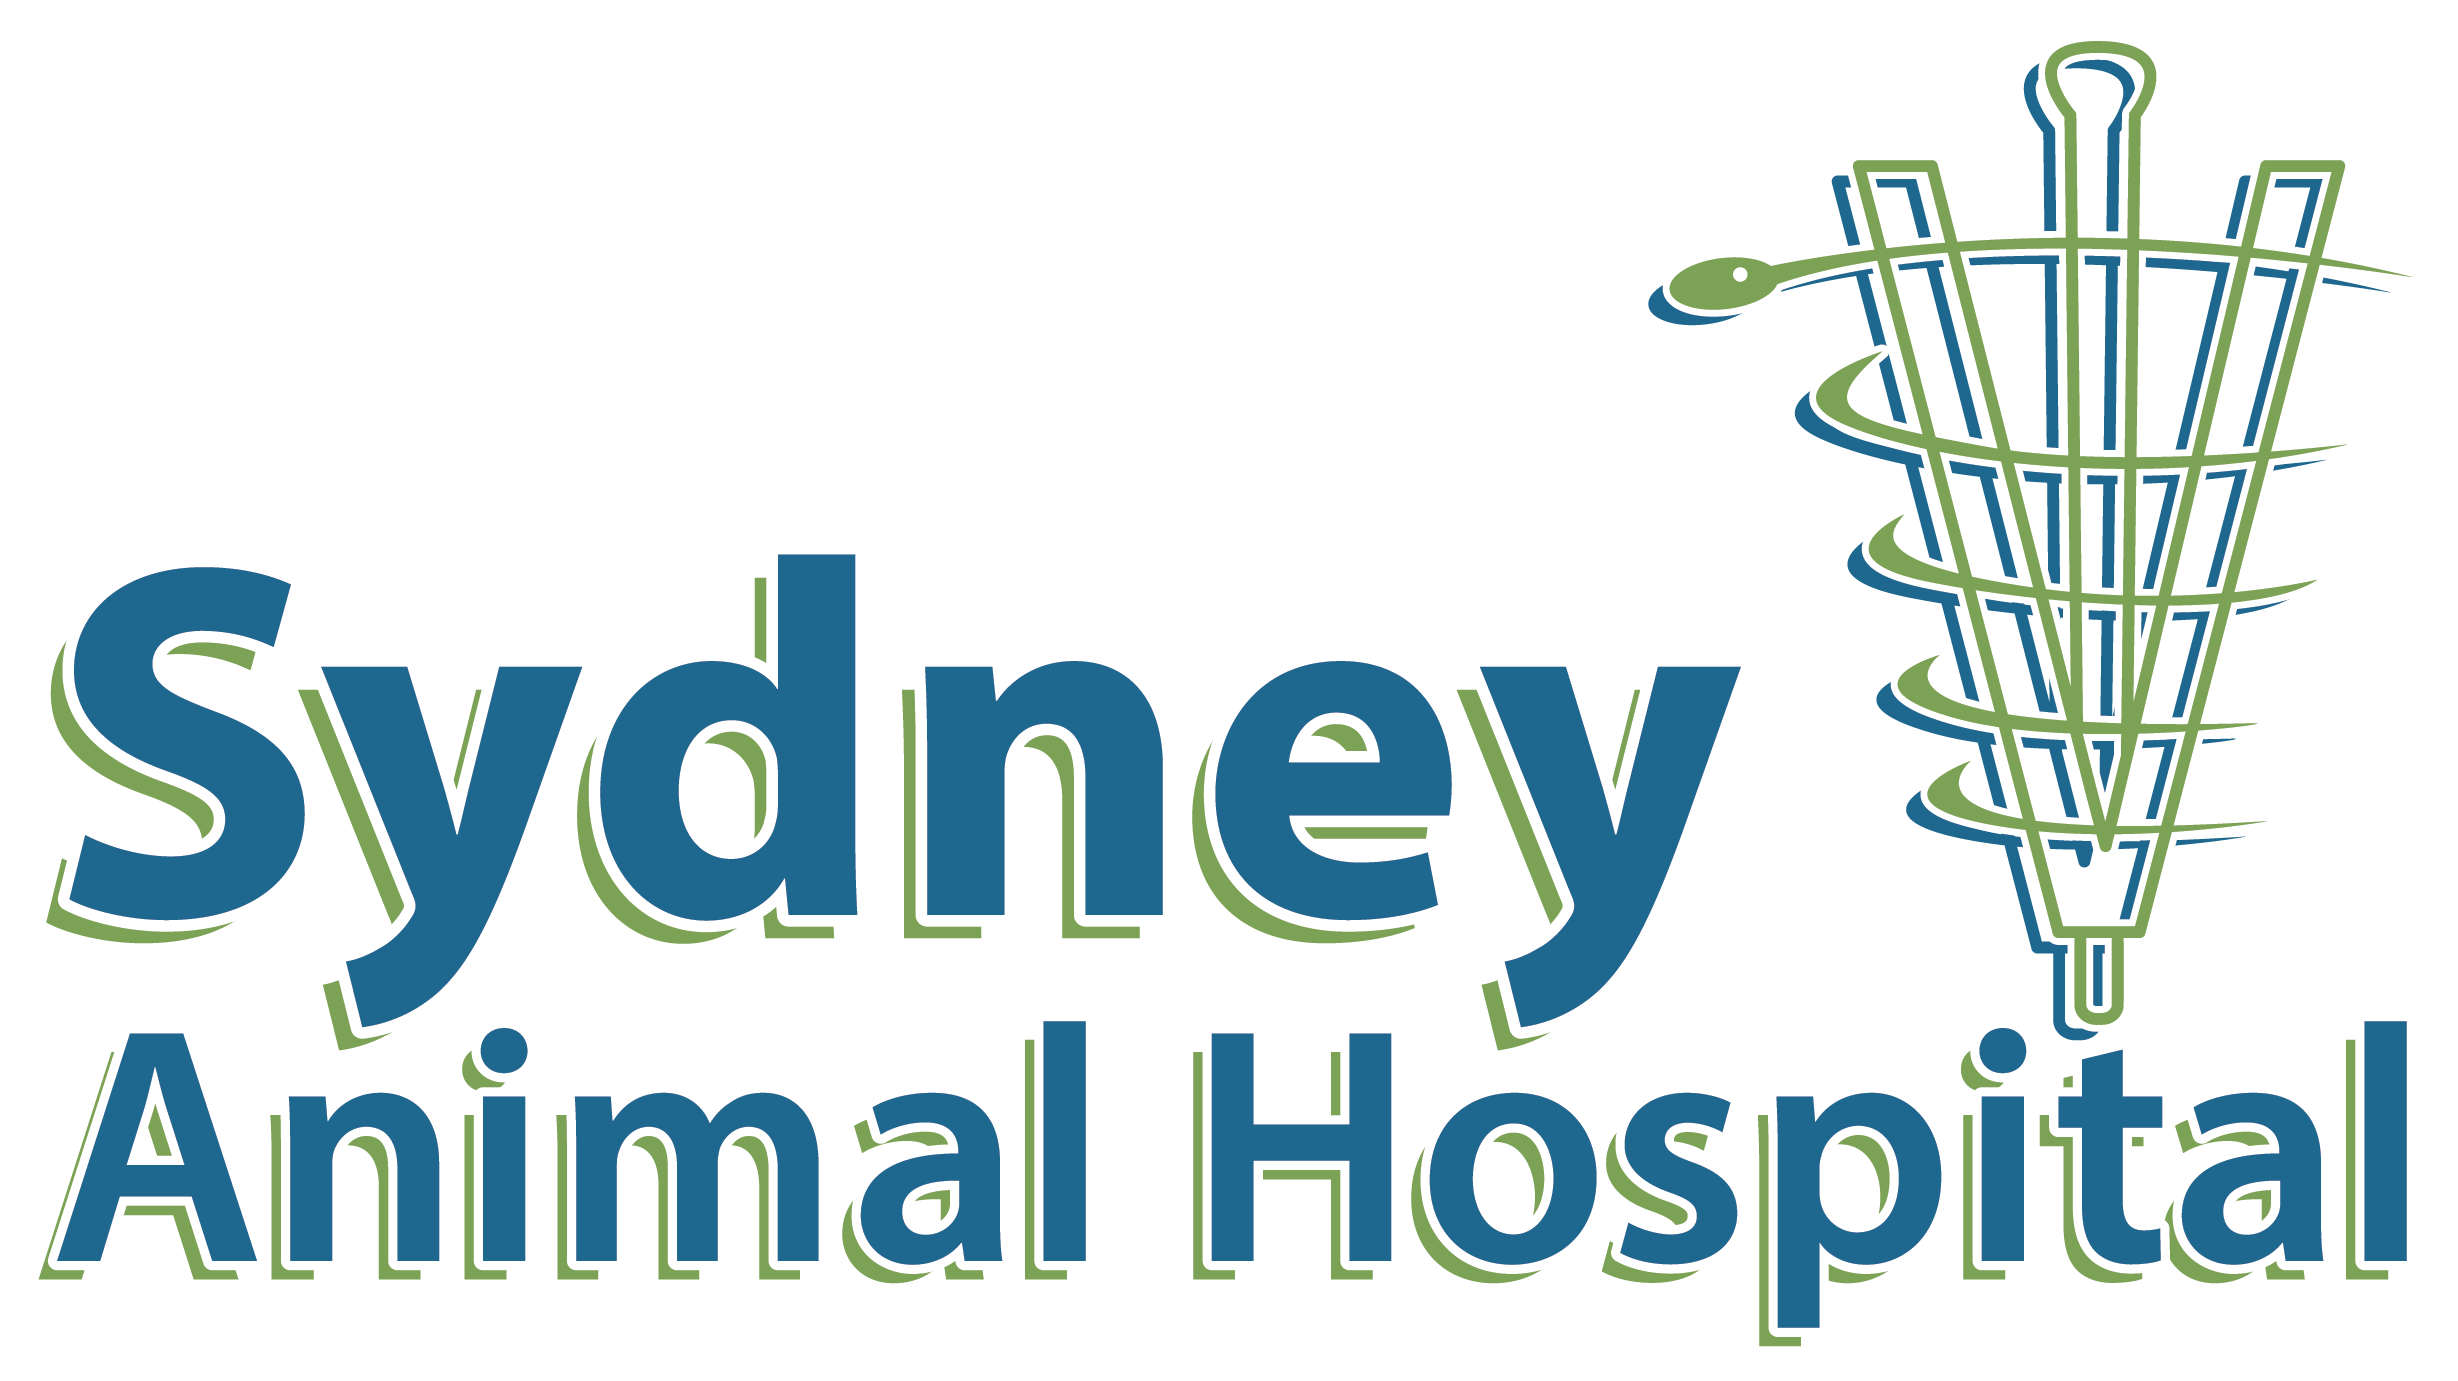 Sydney Animal Hospital: Veterinarian in Sydney, Nova Scotia